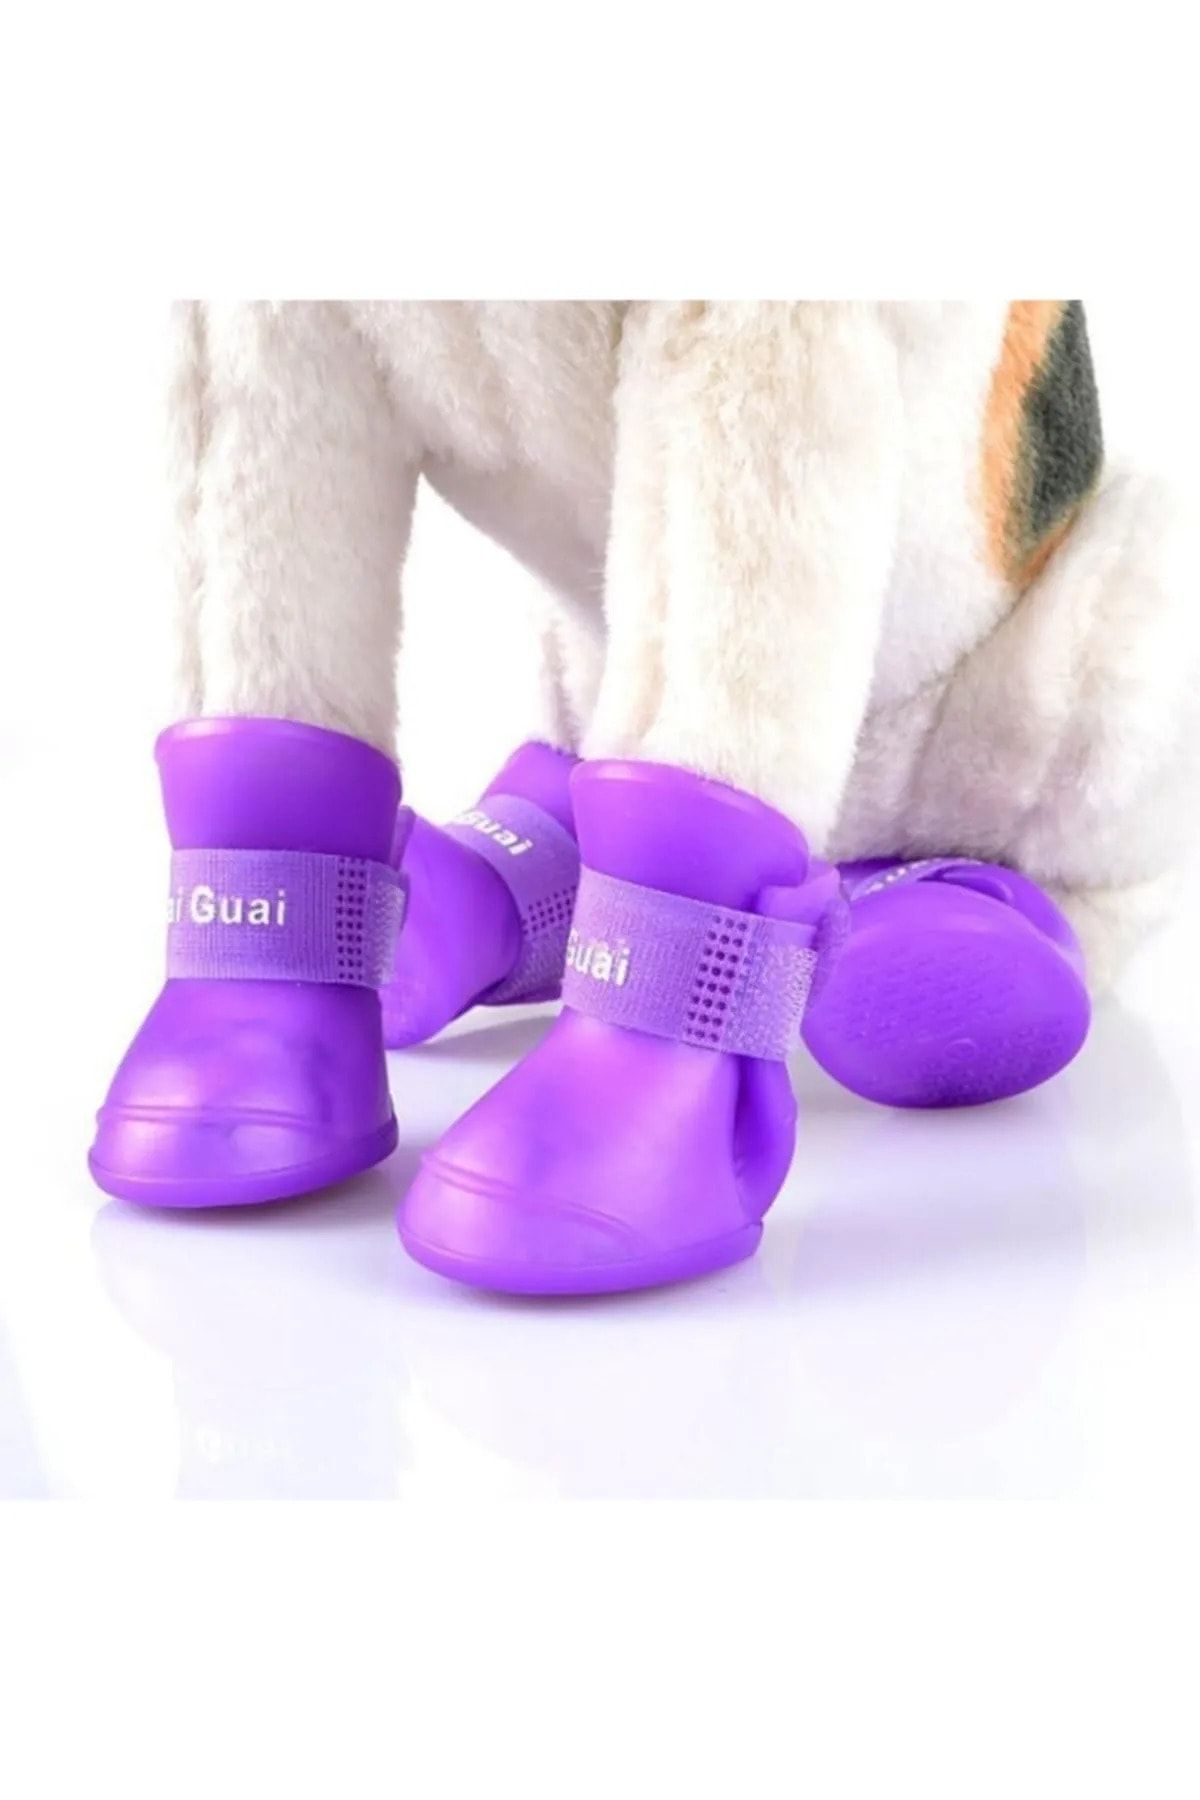 hayhall Silikon Kedi Köpek Ayakkabısı, Cırt Cırtlı Pati Ayakkabısı M Beden Mavi